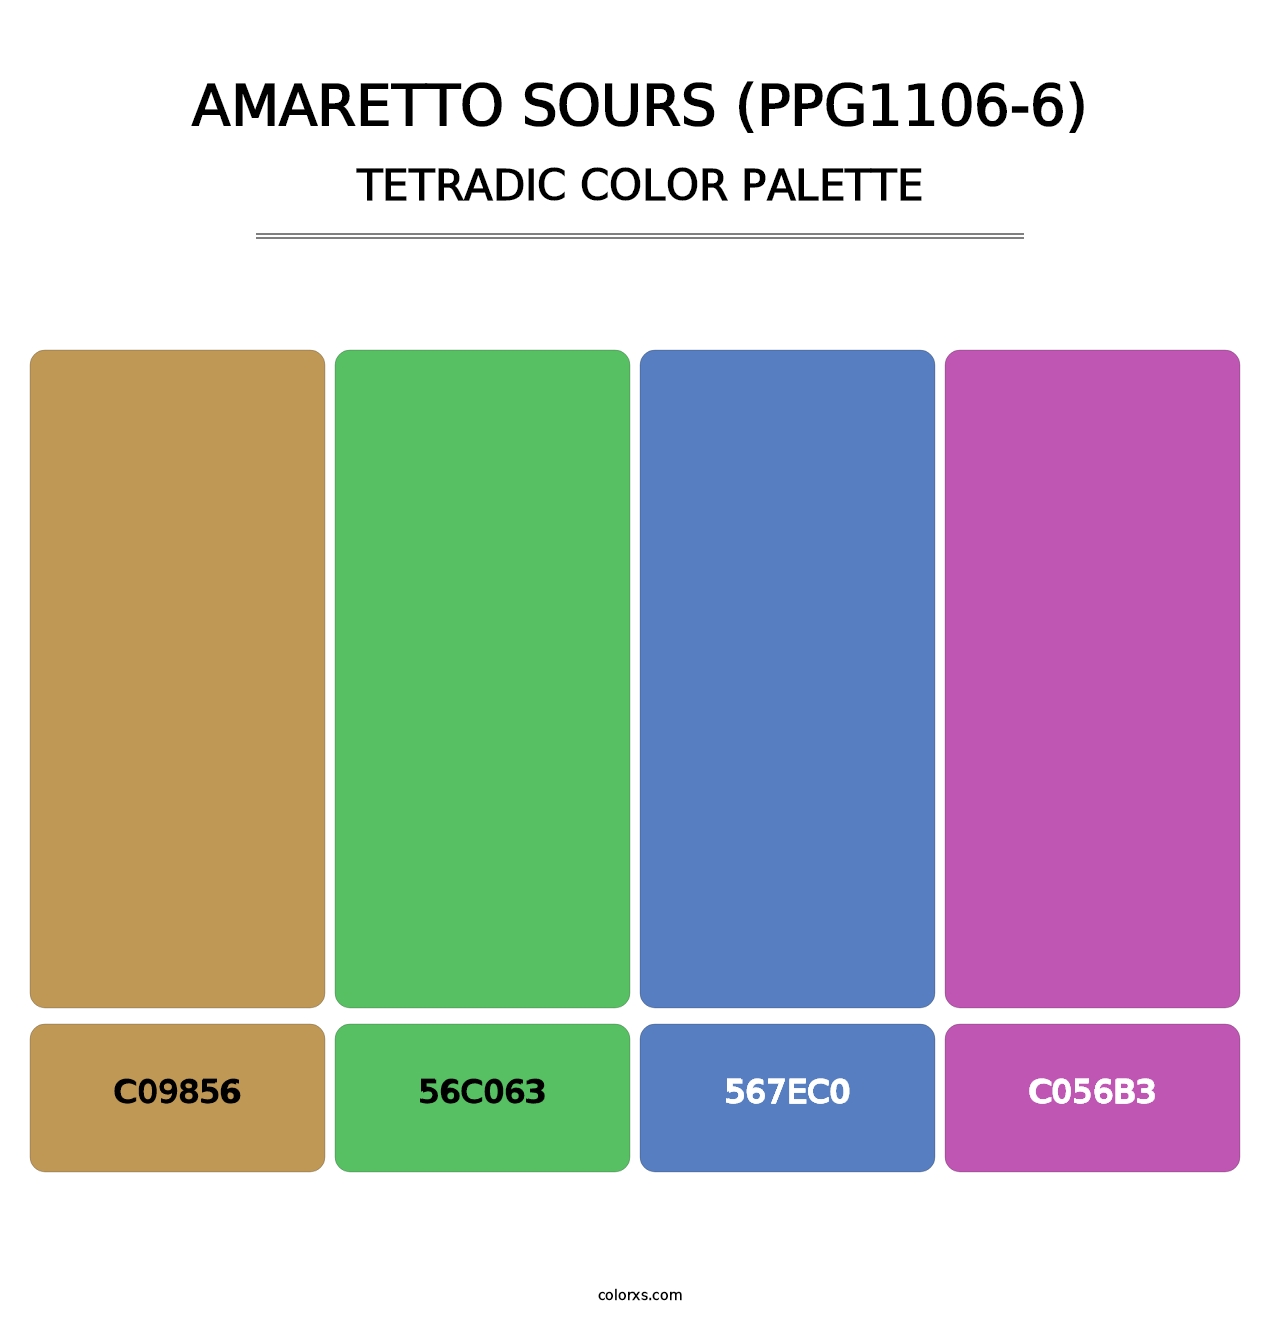 Amaretto Sours (PPG1106-6) - Tetradic Color Palette